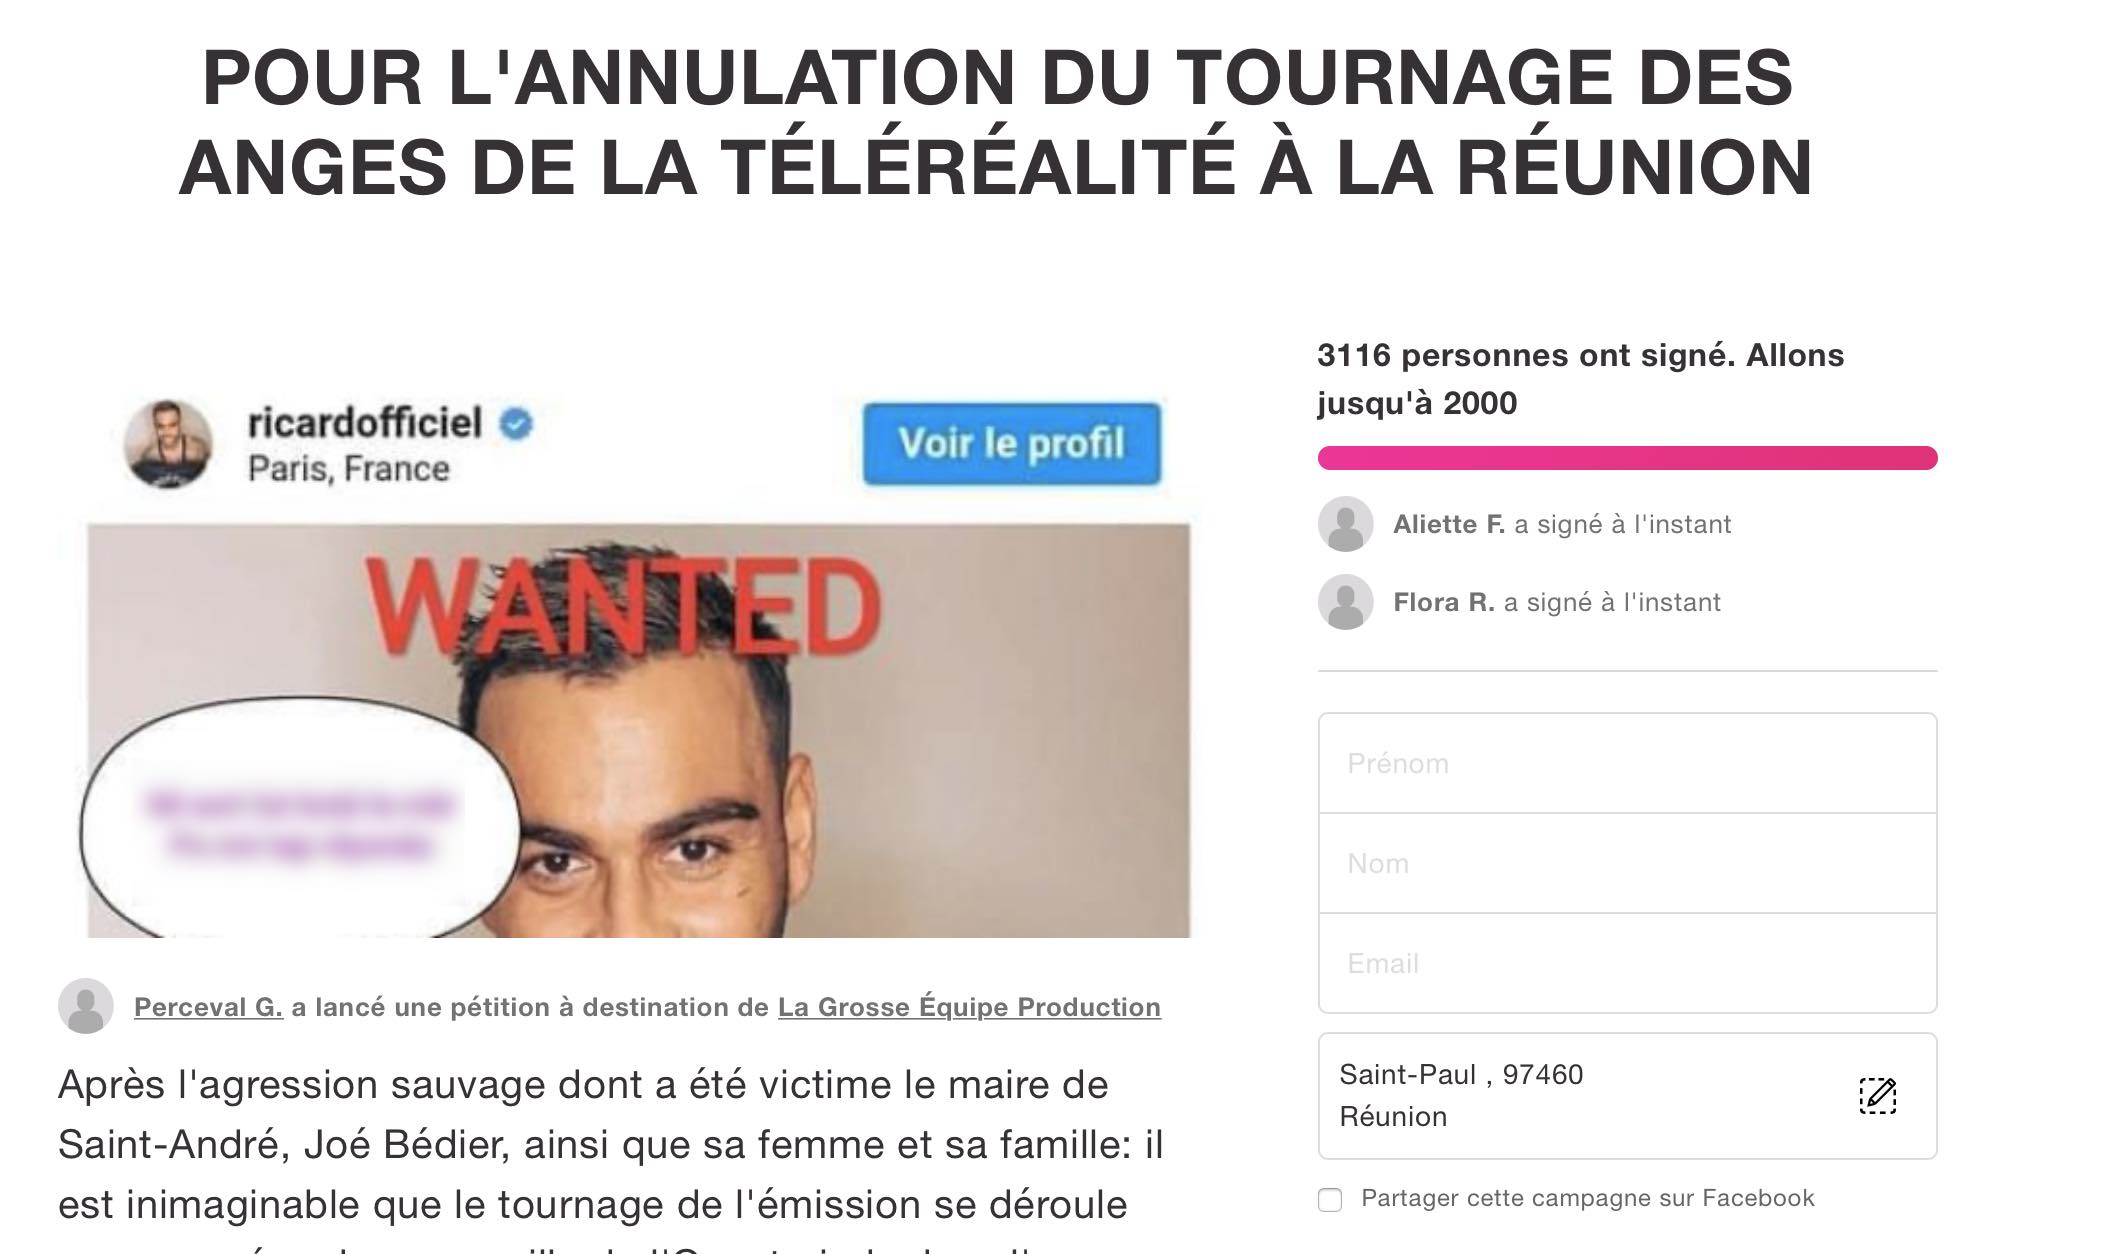 Une pétition réclame l'annulation du tournage des Anges de la Téléréalité à La Réunion